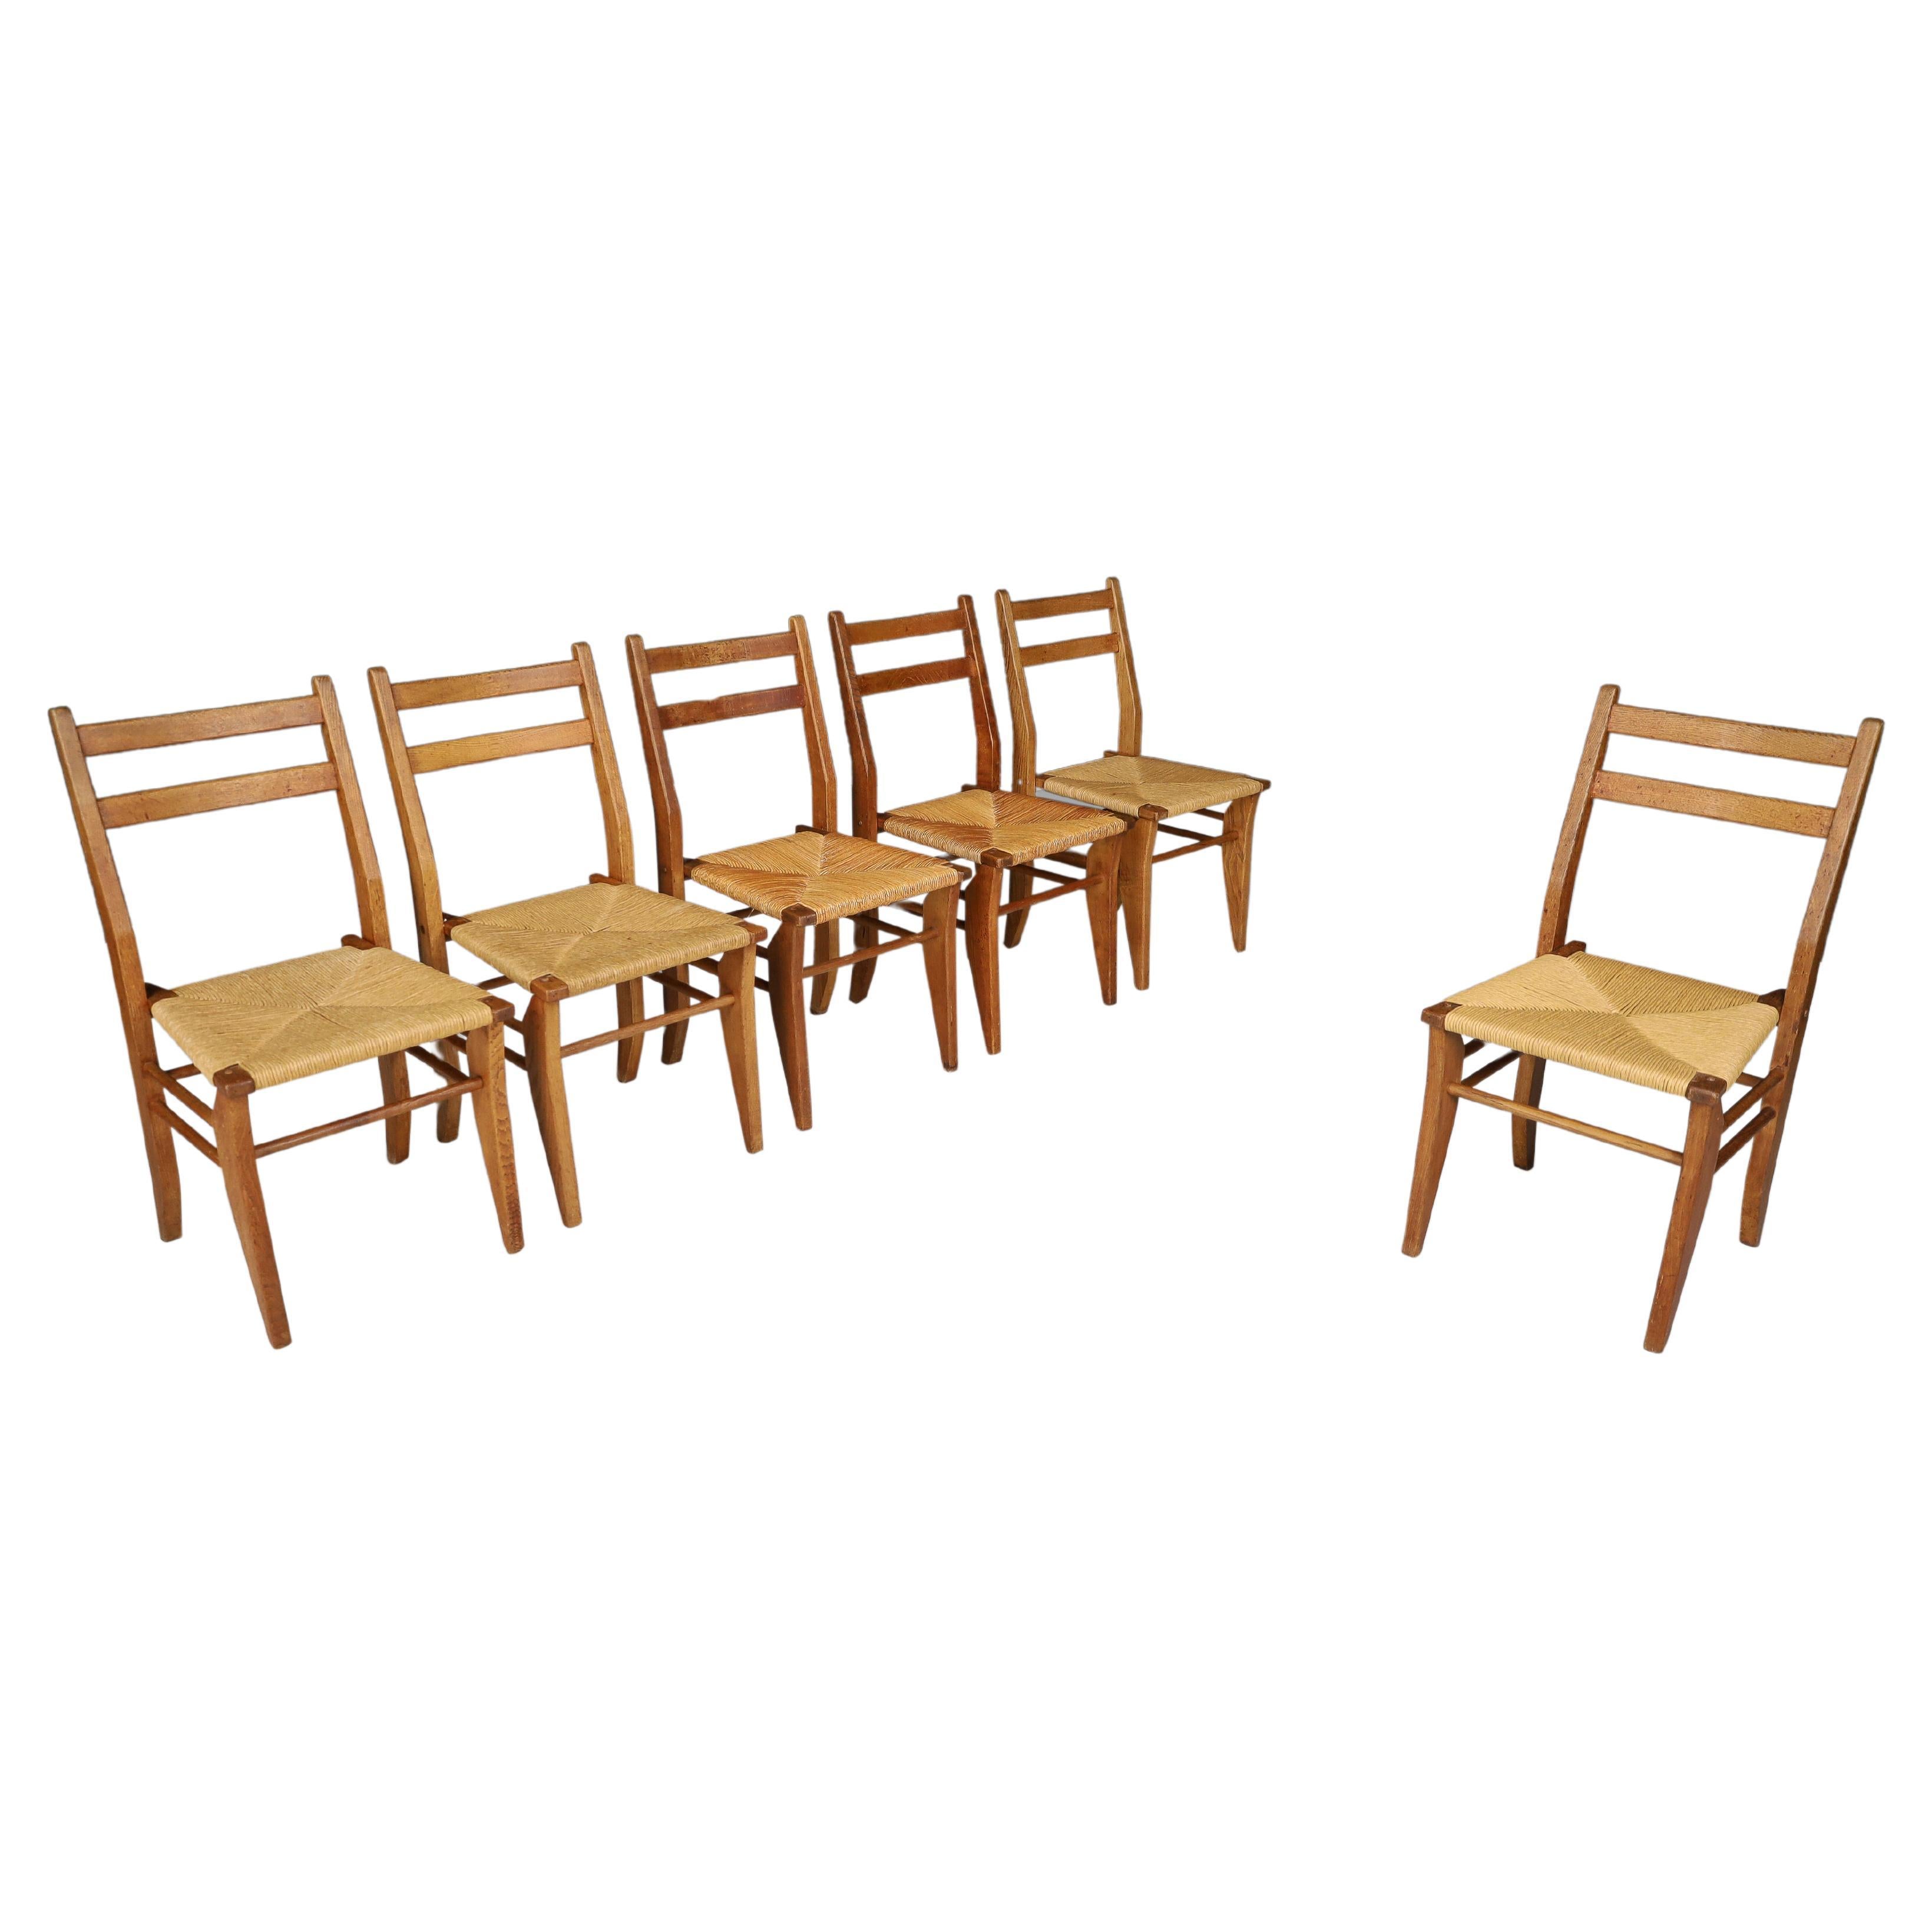 Set aus sechs Esszimmerstühlen aus Eiche und Binsen Frankreich, Guillerme & Chambron, 1960er Jahre.   